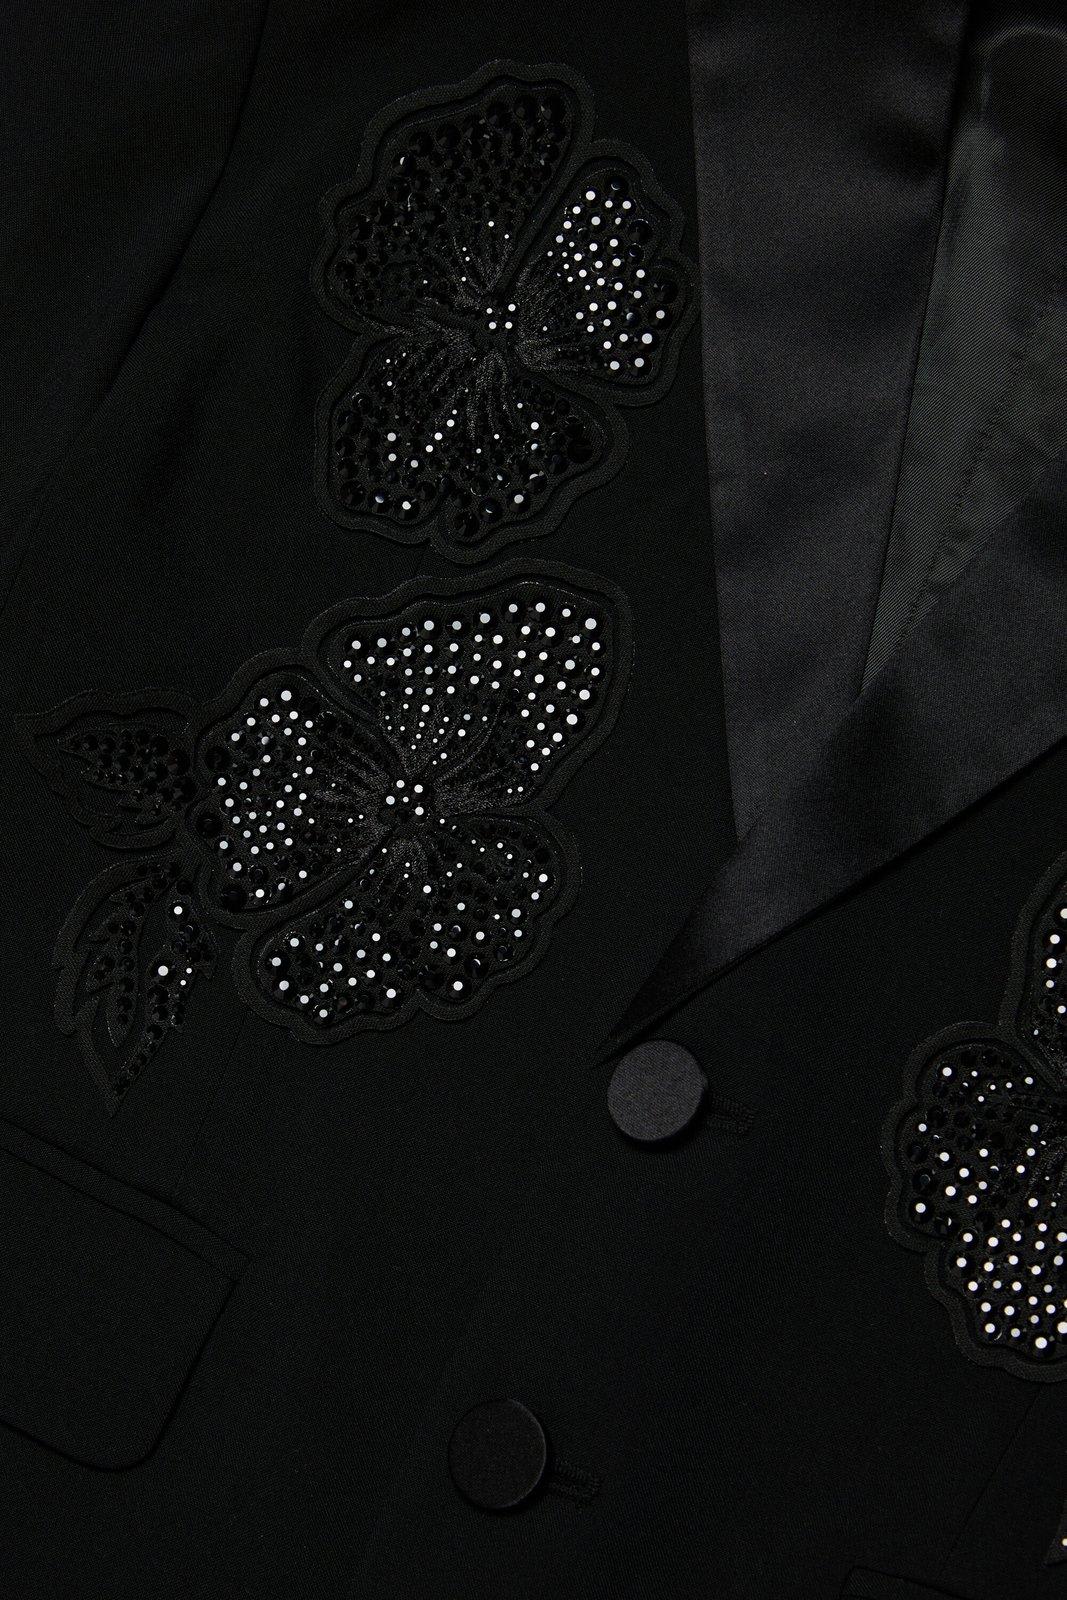 Shop Dsquared2 Floral-embroidered Embellished Blazer In Black